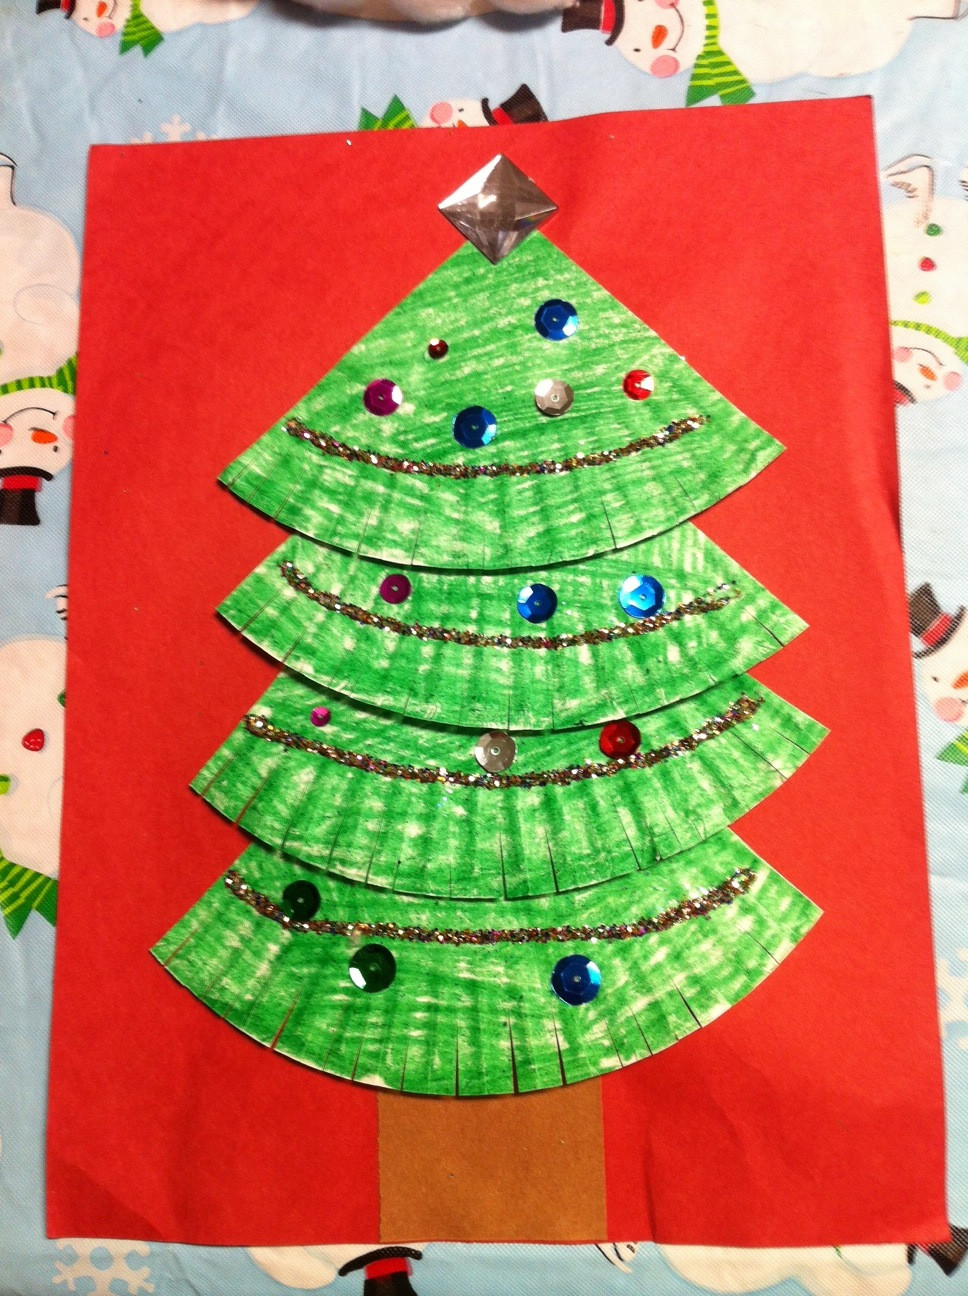 Preschool Art Project Ideas
 Kindergarten Kids At Play Fun Winter & Christmas Craftivities